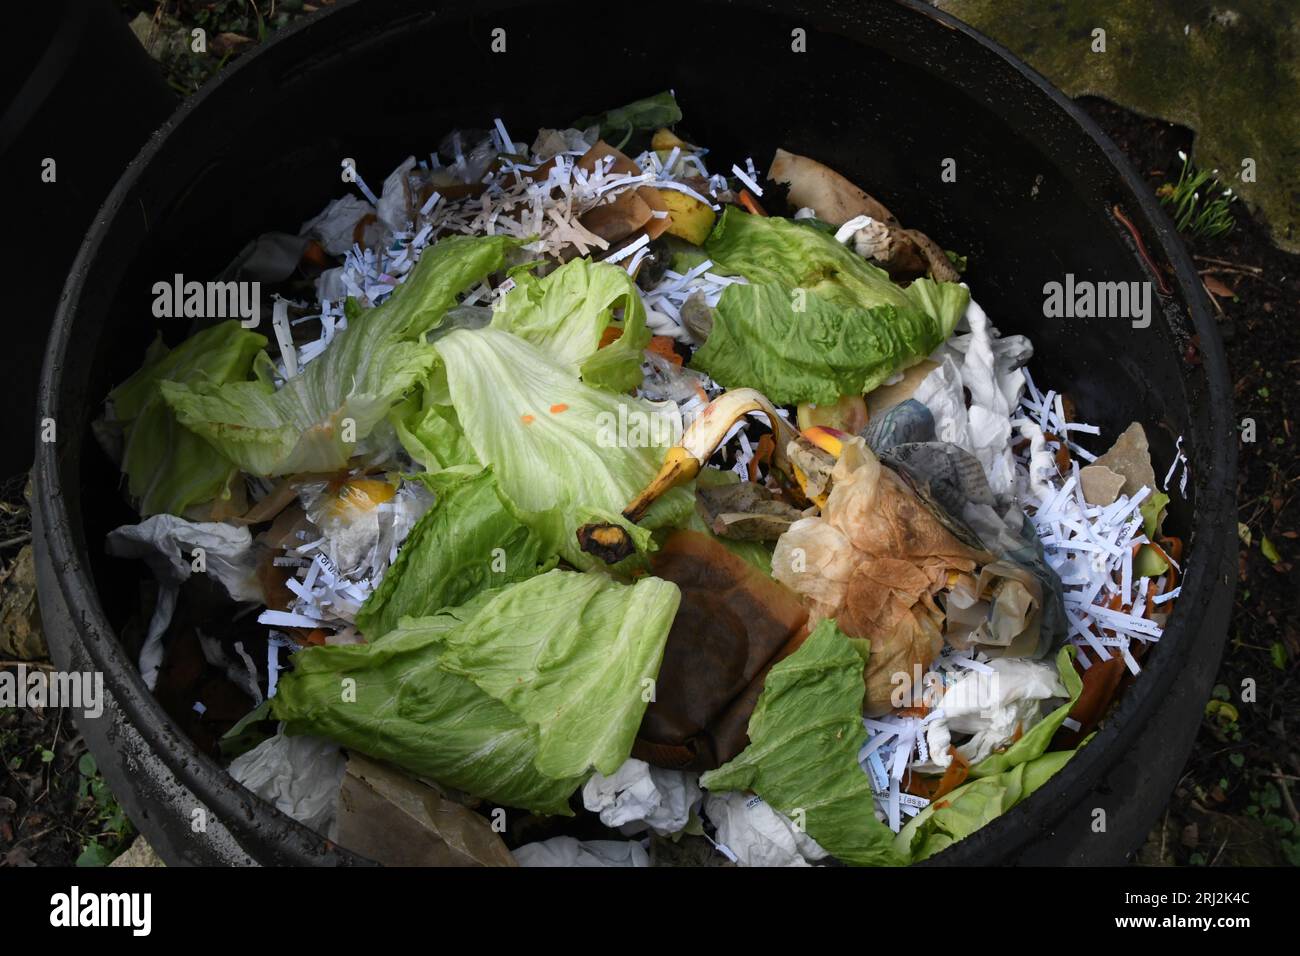 Il contenuto di un bidone di compost di plastica su un'assegnazione. Creato dai rifiuti domestici, peelings vegetali, caffè macinato e foglie di tè, carta, f Foto Stock